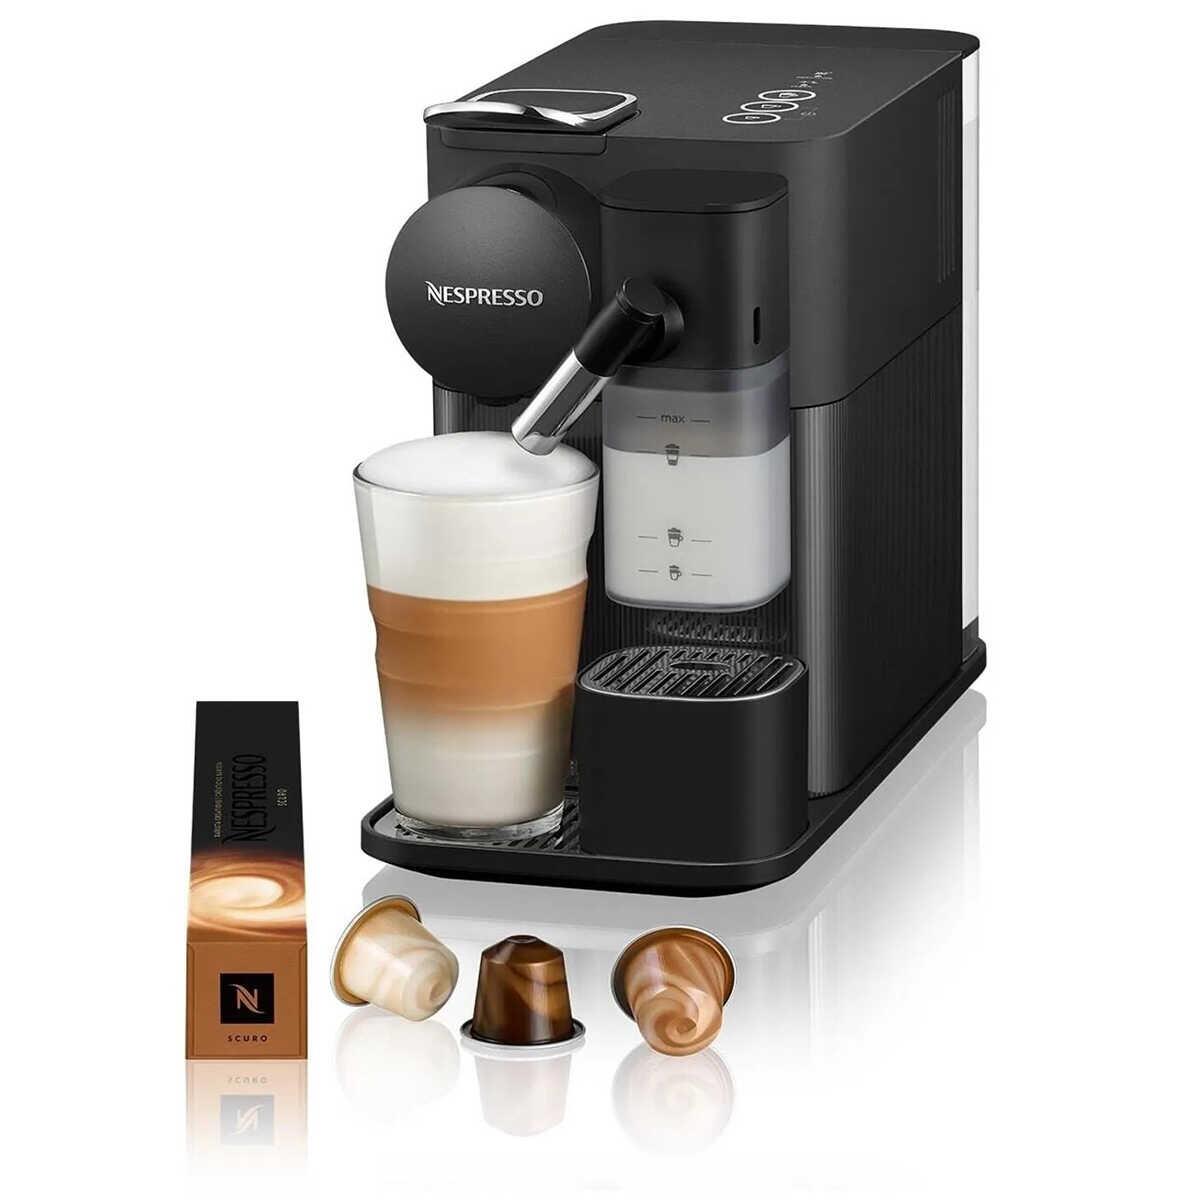 Nespresso Lattissima One Black Coffee Machine F121 1